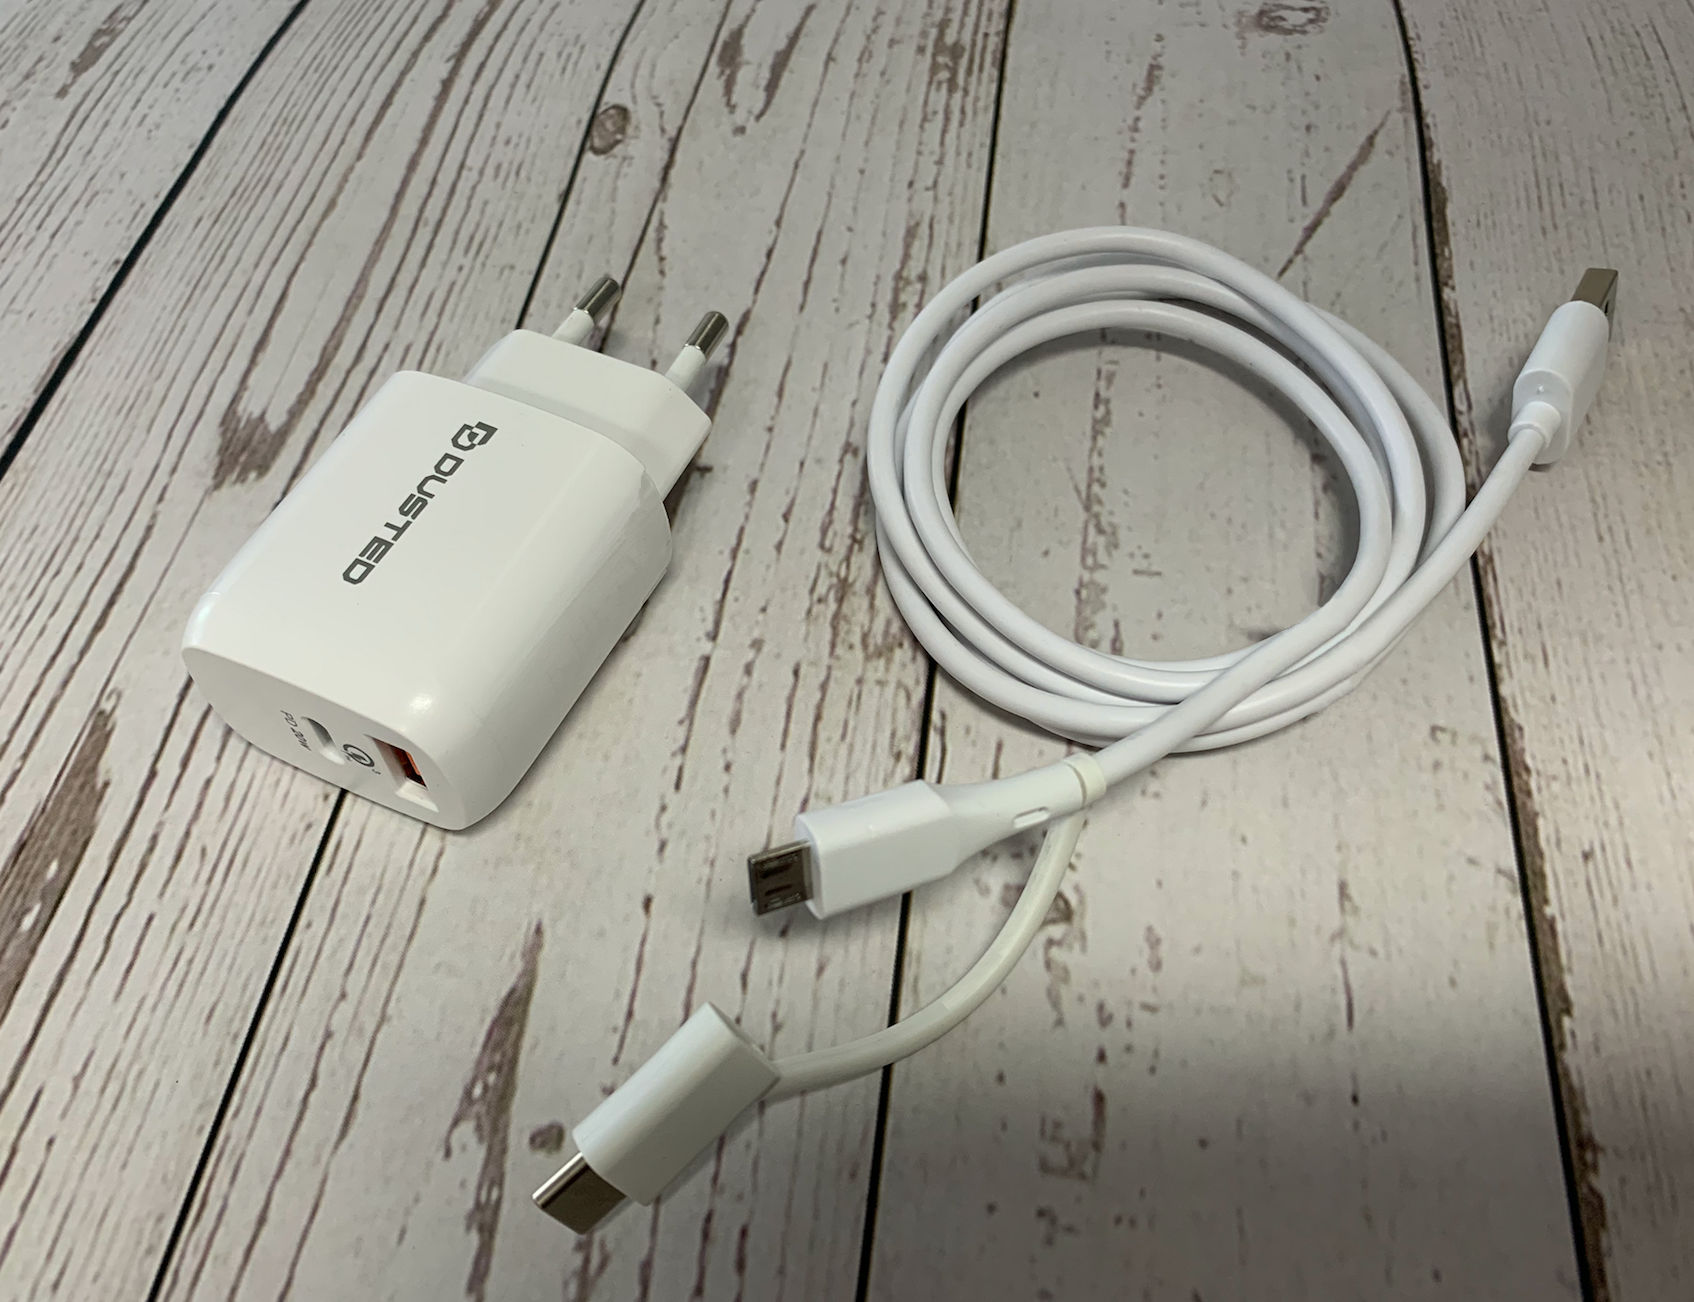 Cargador para ¡Phone 7 + cable lightning, usb, apple, carga rápida